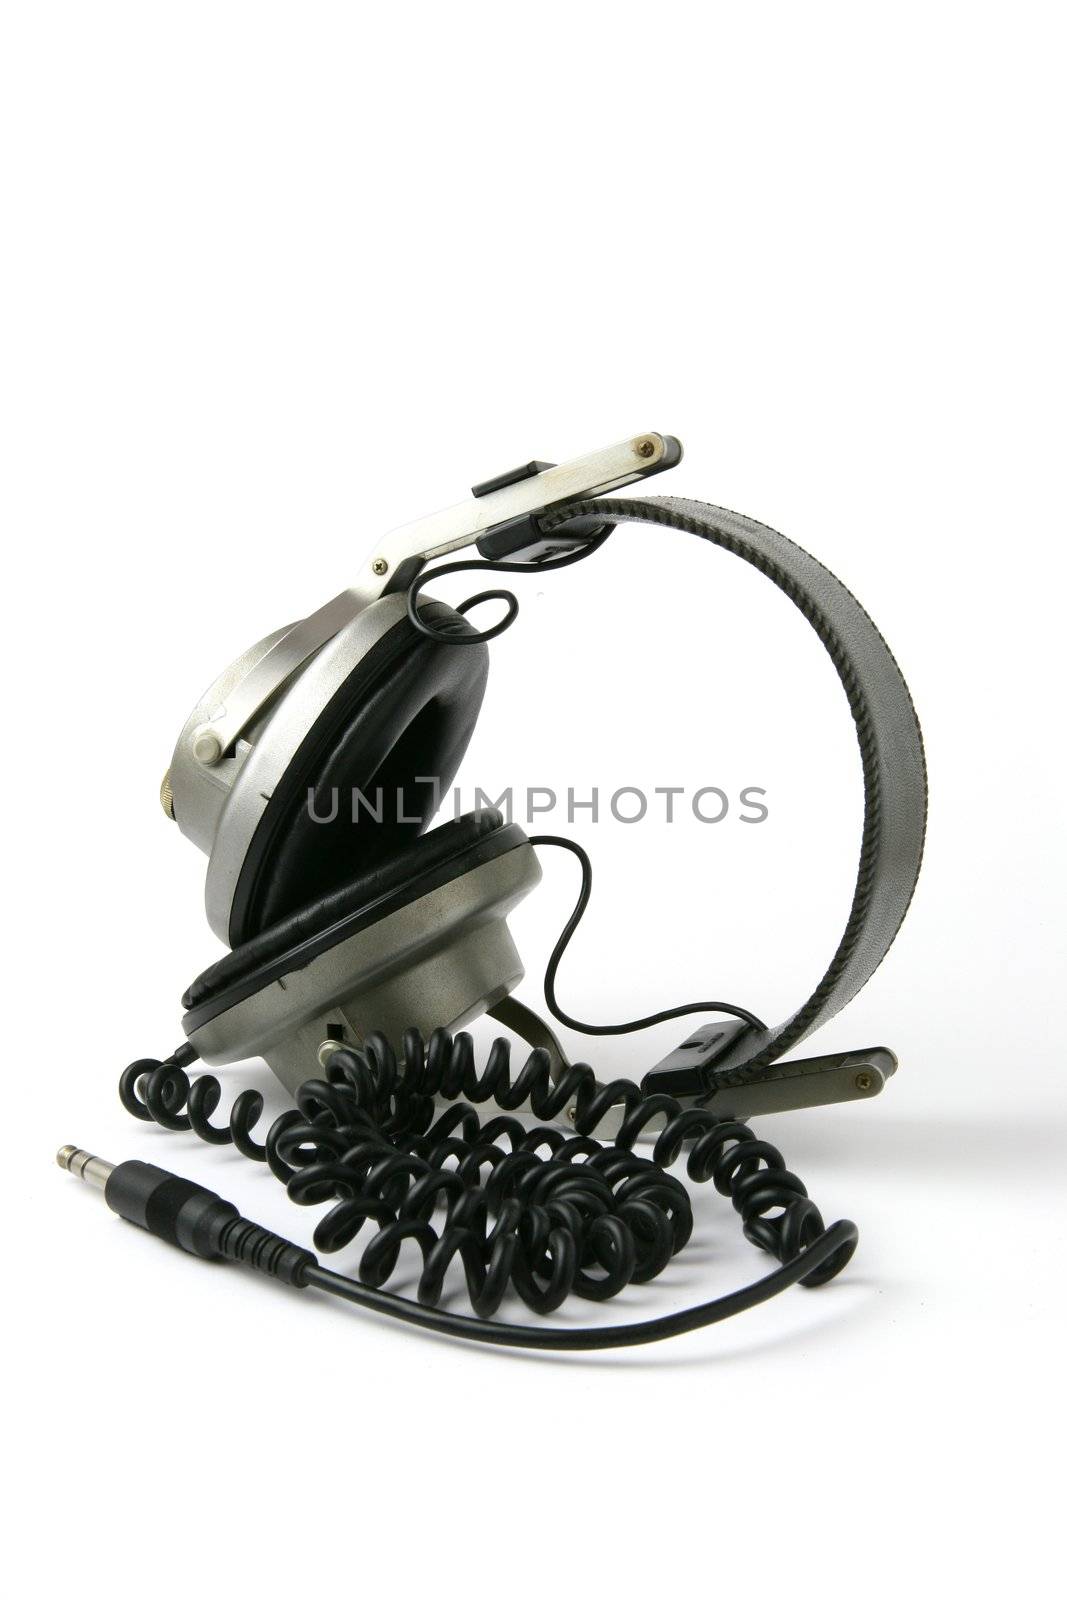 Headphones by phovoir